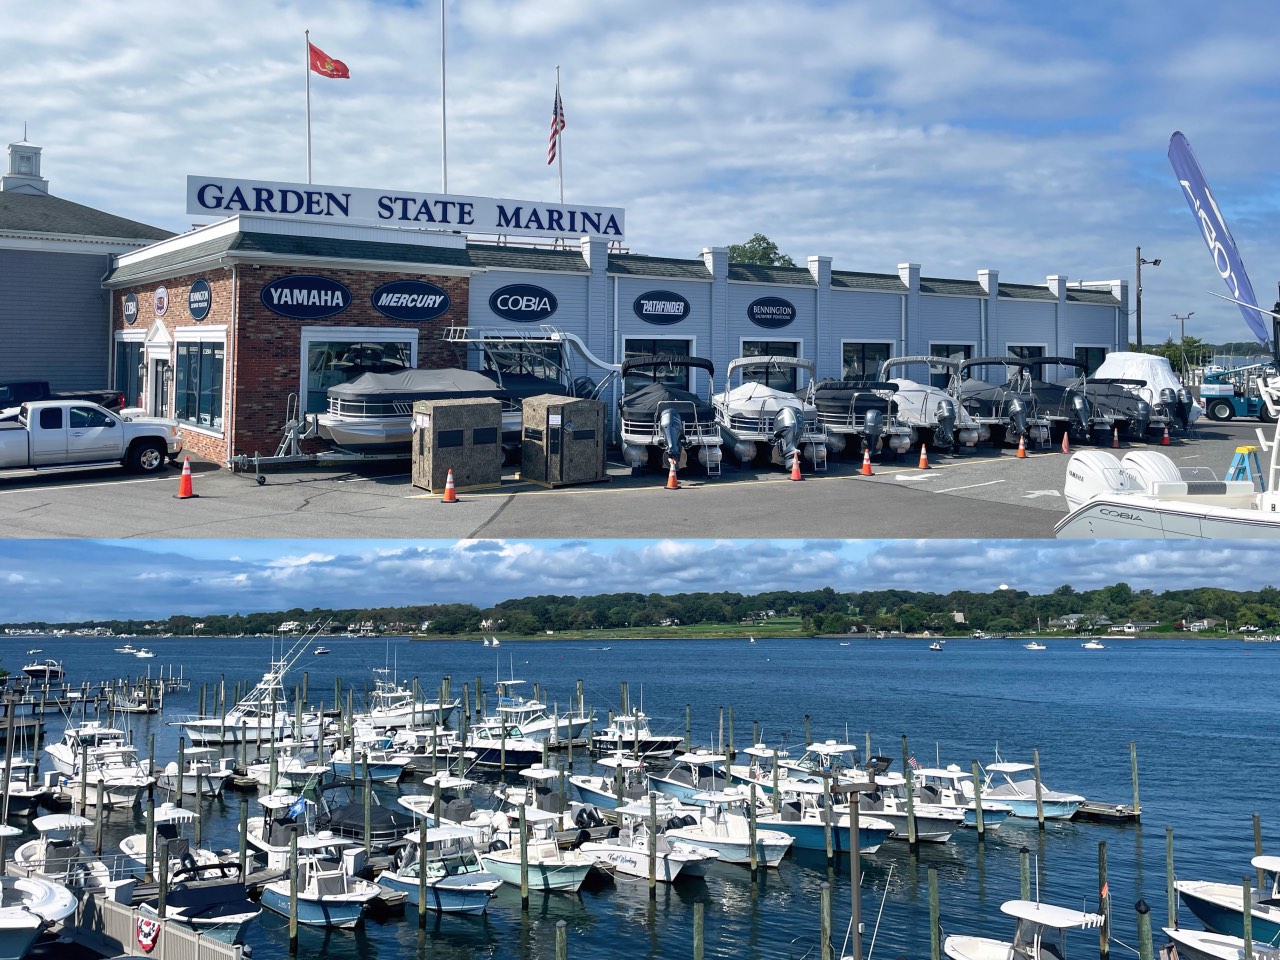 Garden State Yacht Sales